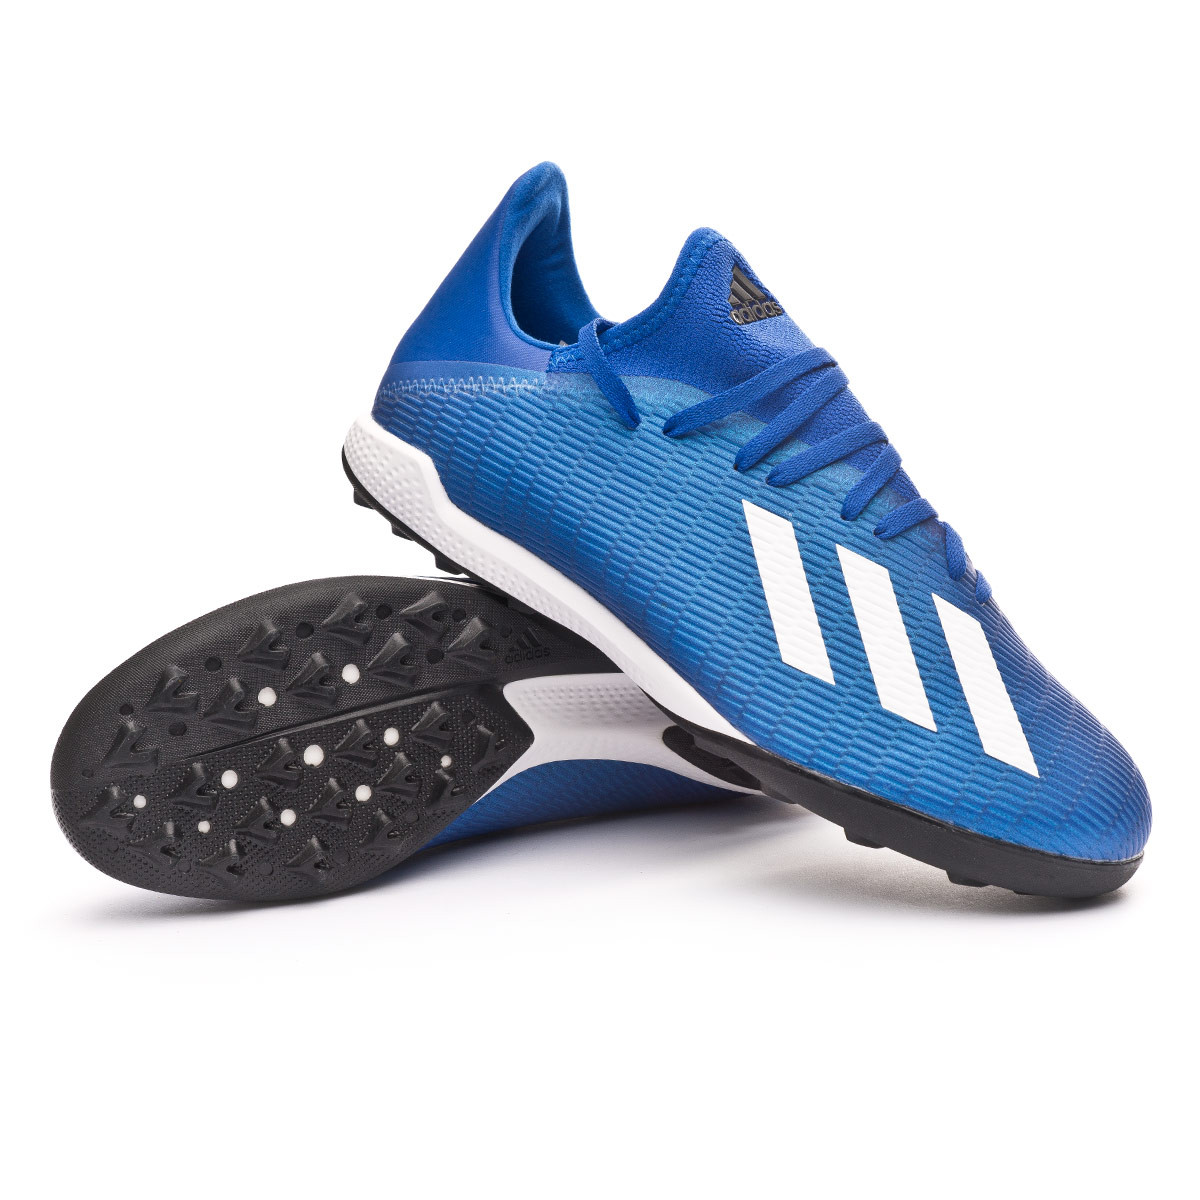 Football Boot adidas X 19.3 Turf Team royal blue-White-Black - Football  store Fútbol Emotion